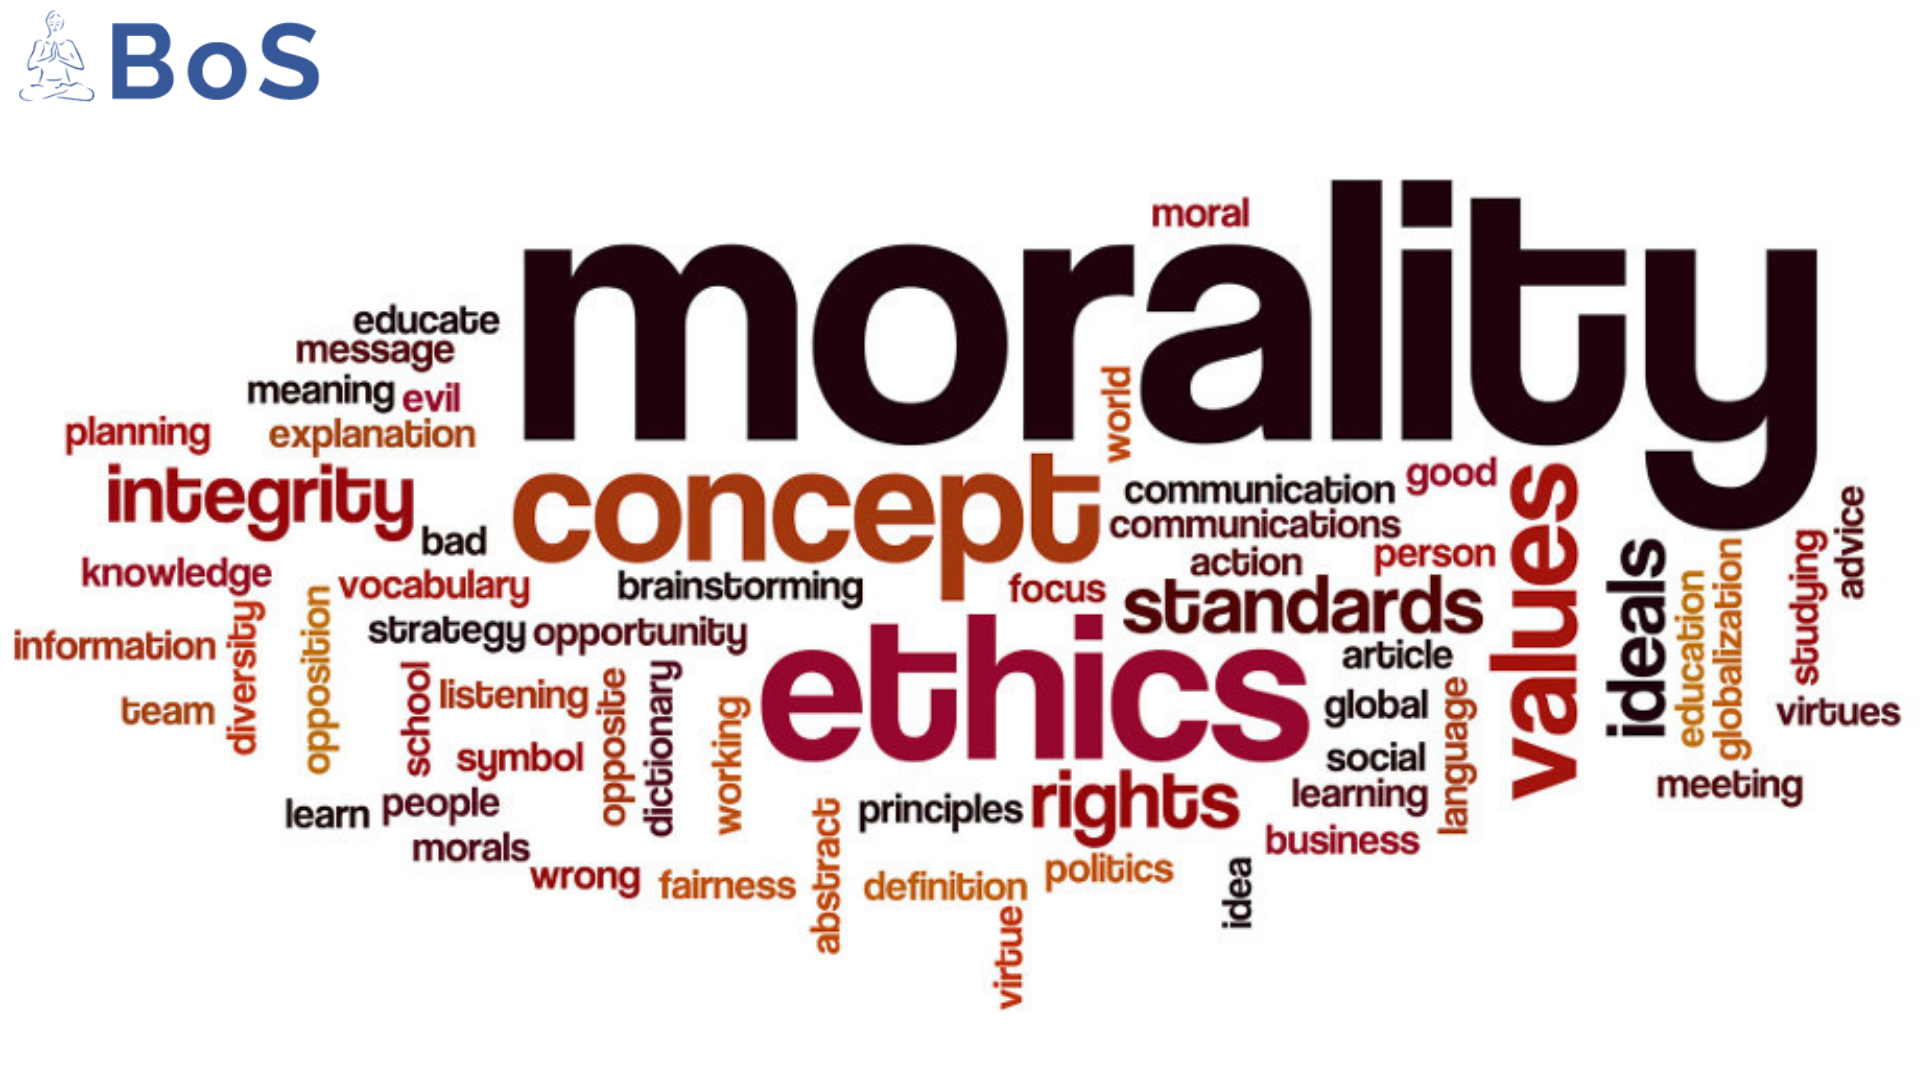 present values and morals